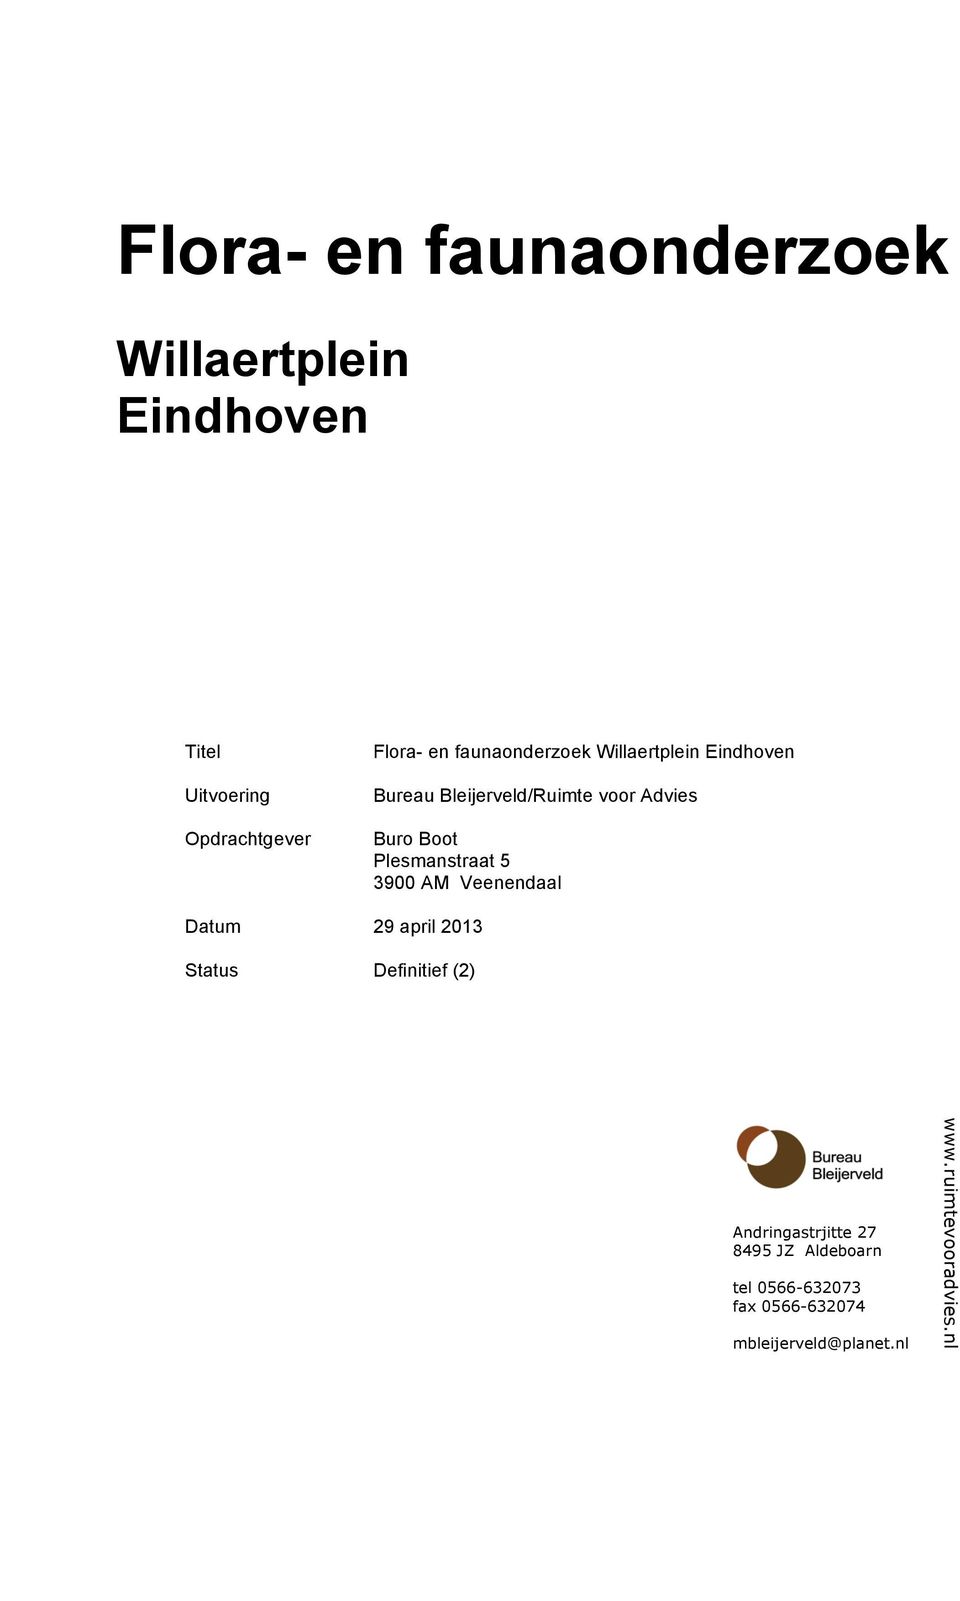 Plesmanstraat 5 3900 AM Veenendaal Datum 29 april 2013 Status Definitief (2)